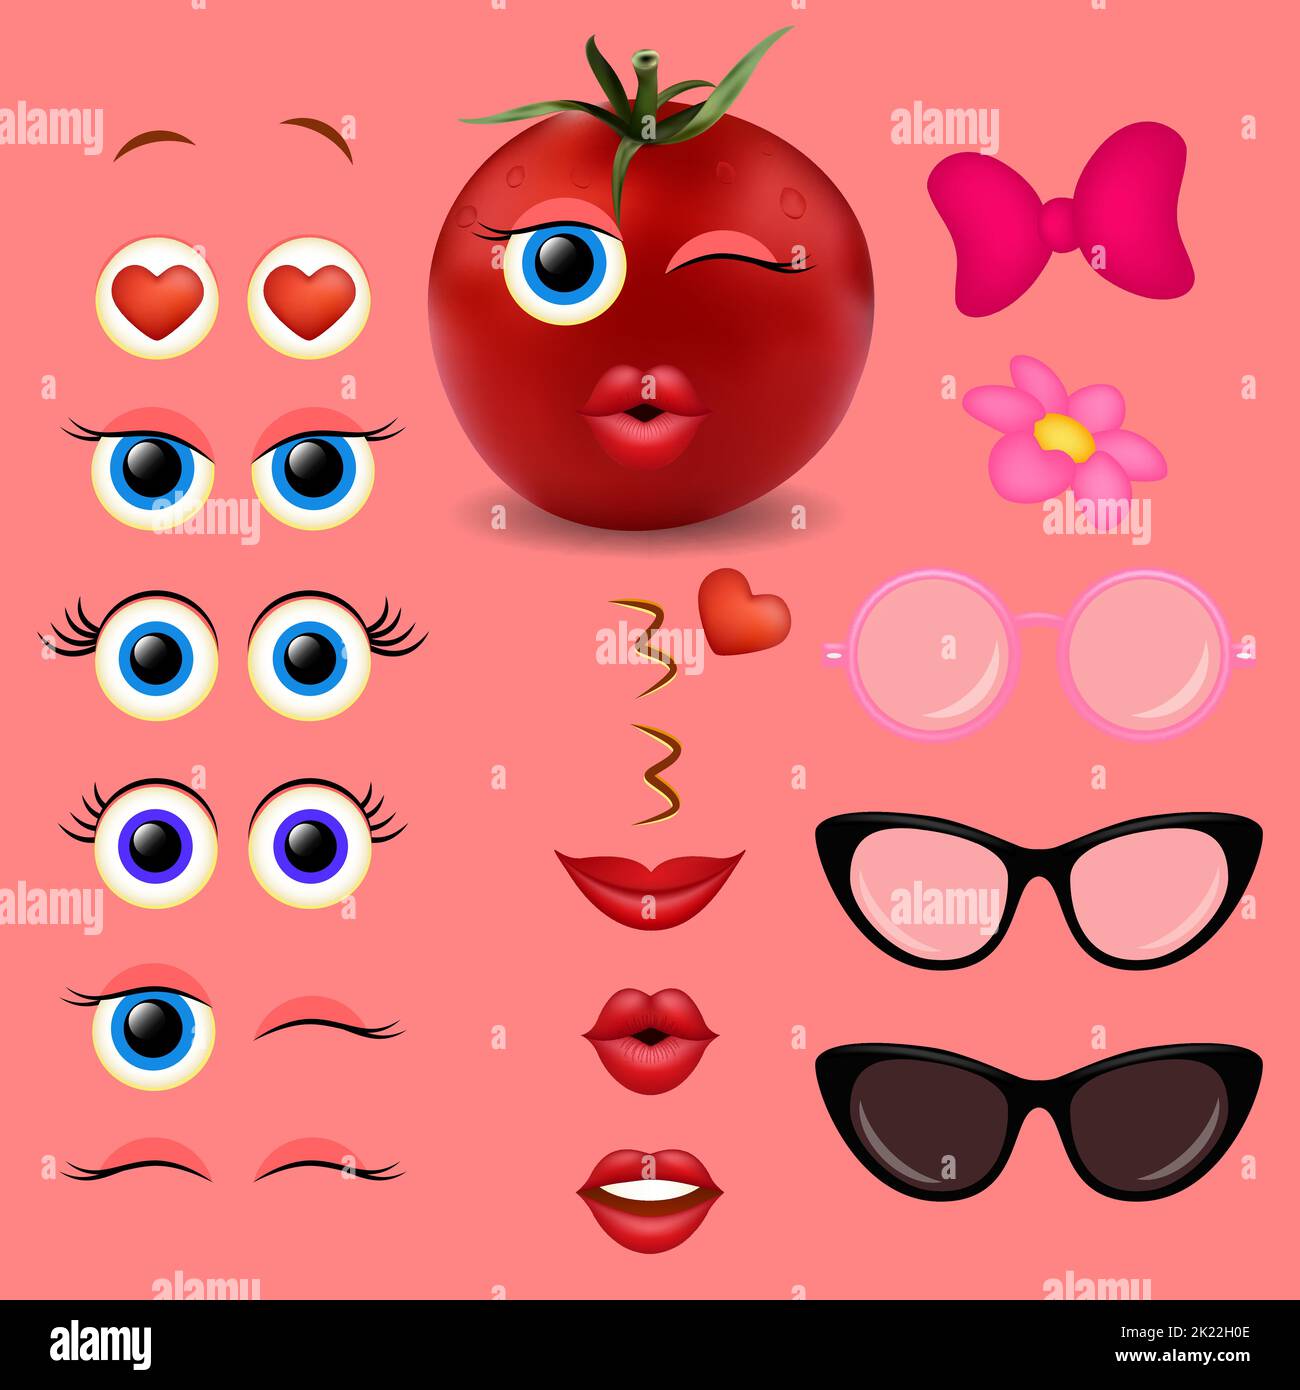 Collection de motifs vectoriels de tomates emoji créateur Illustration de Vecteur